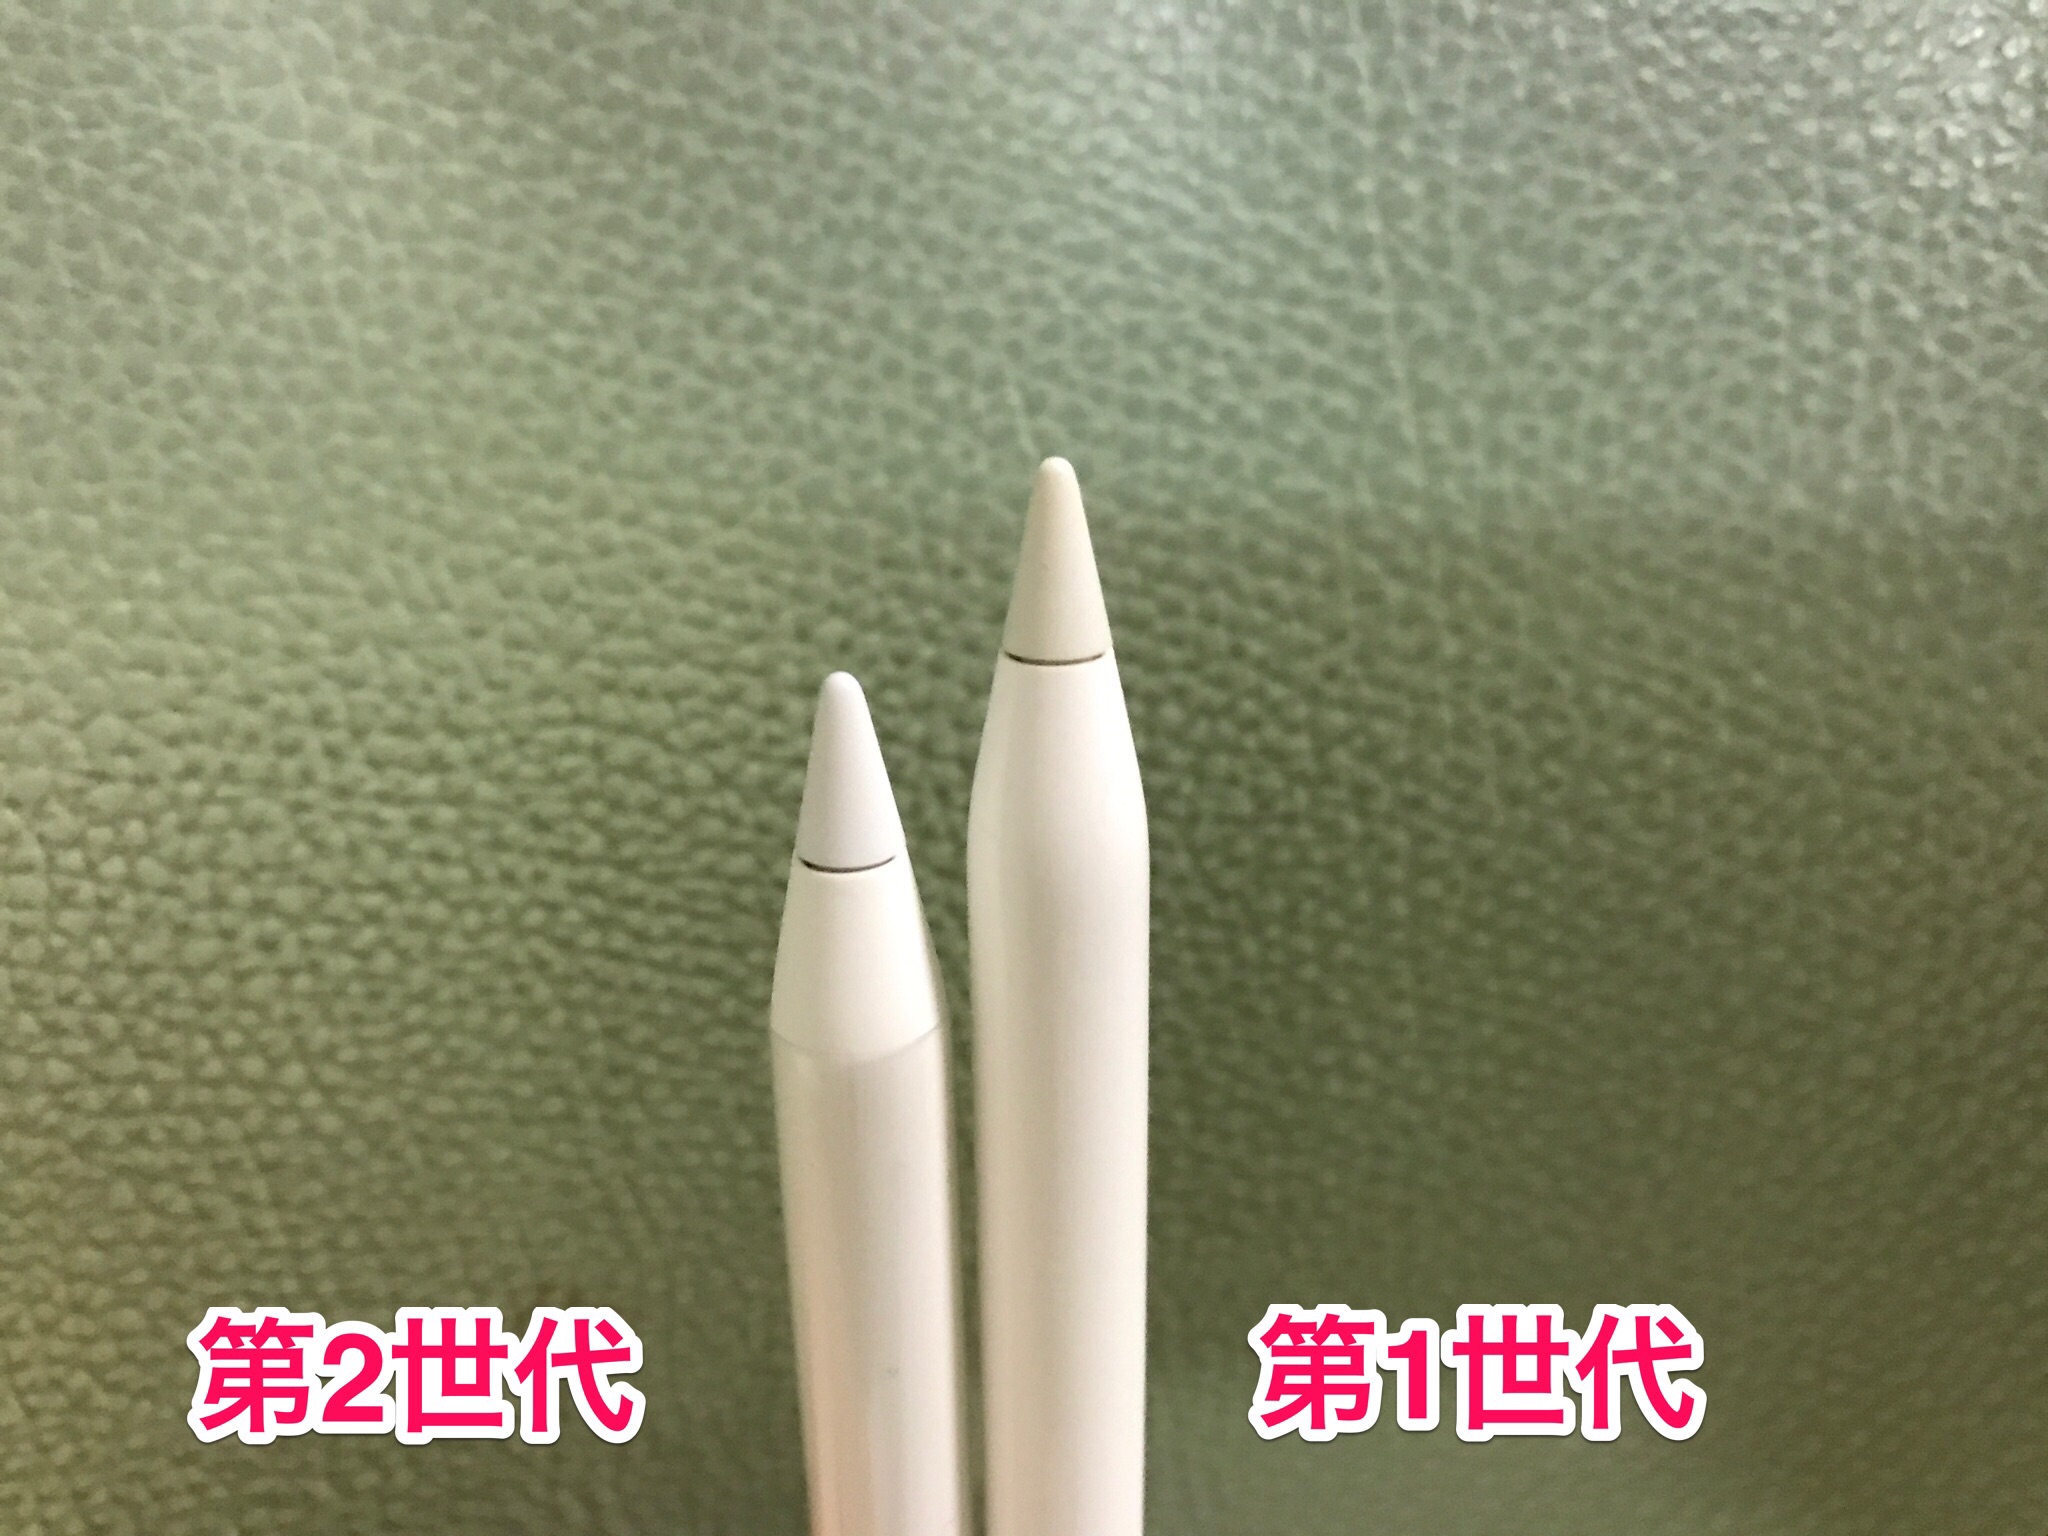 8235円 2021年新作 Apple pencil 第2世代